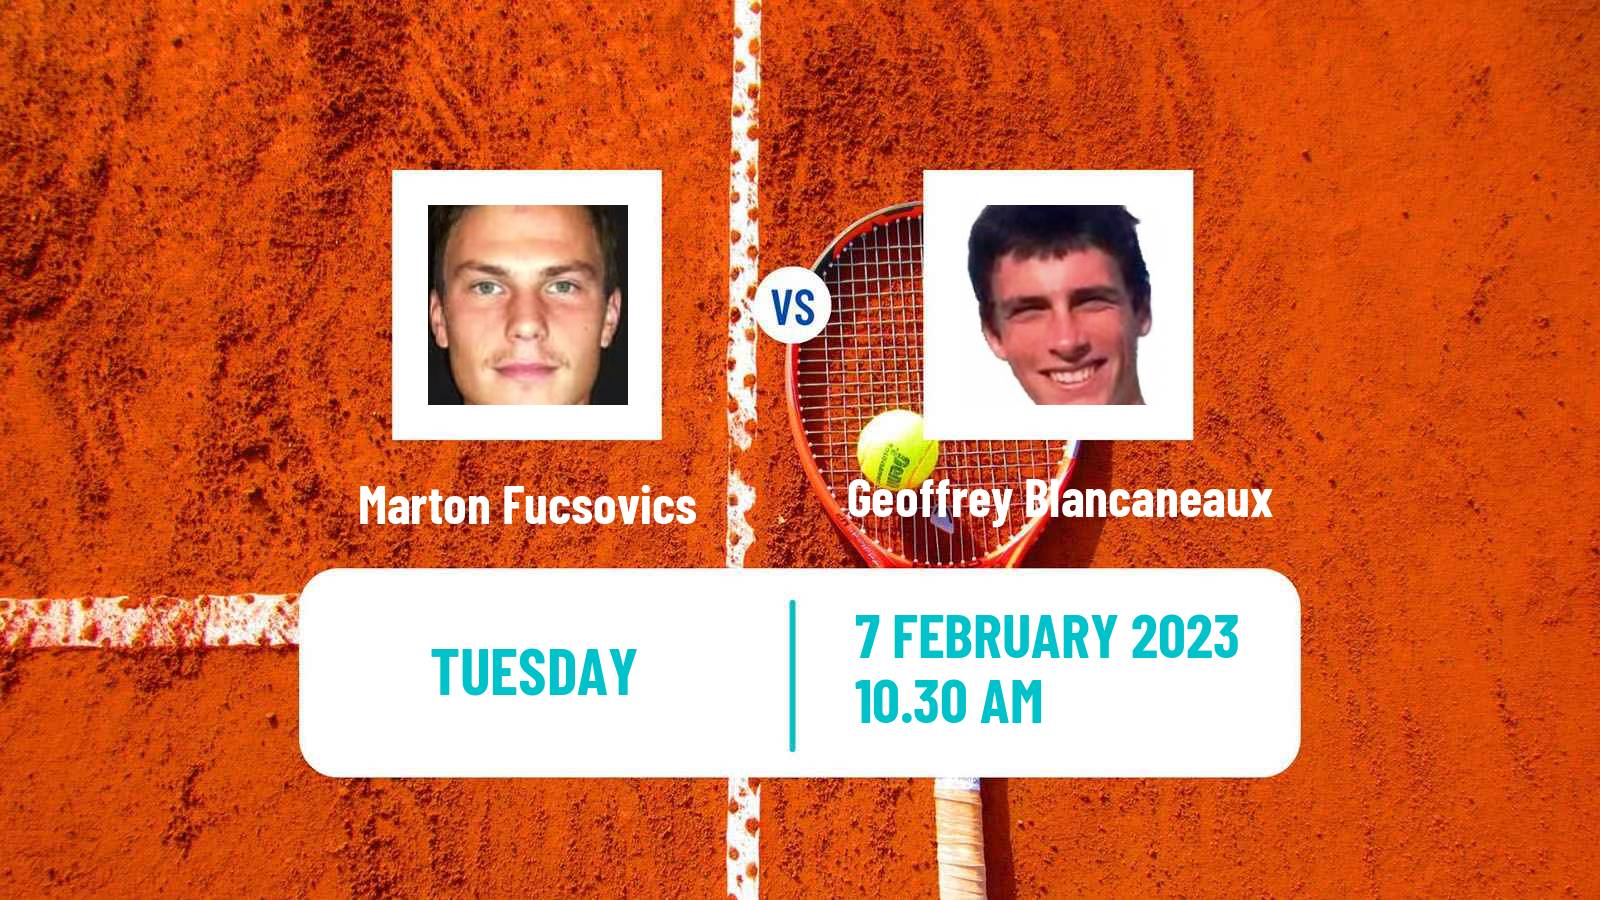 Tennis ATP Montpellier Marton Fucsovics - Geoffrey Blancaneaux